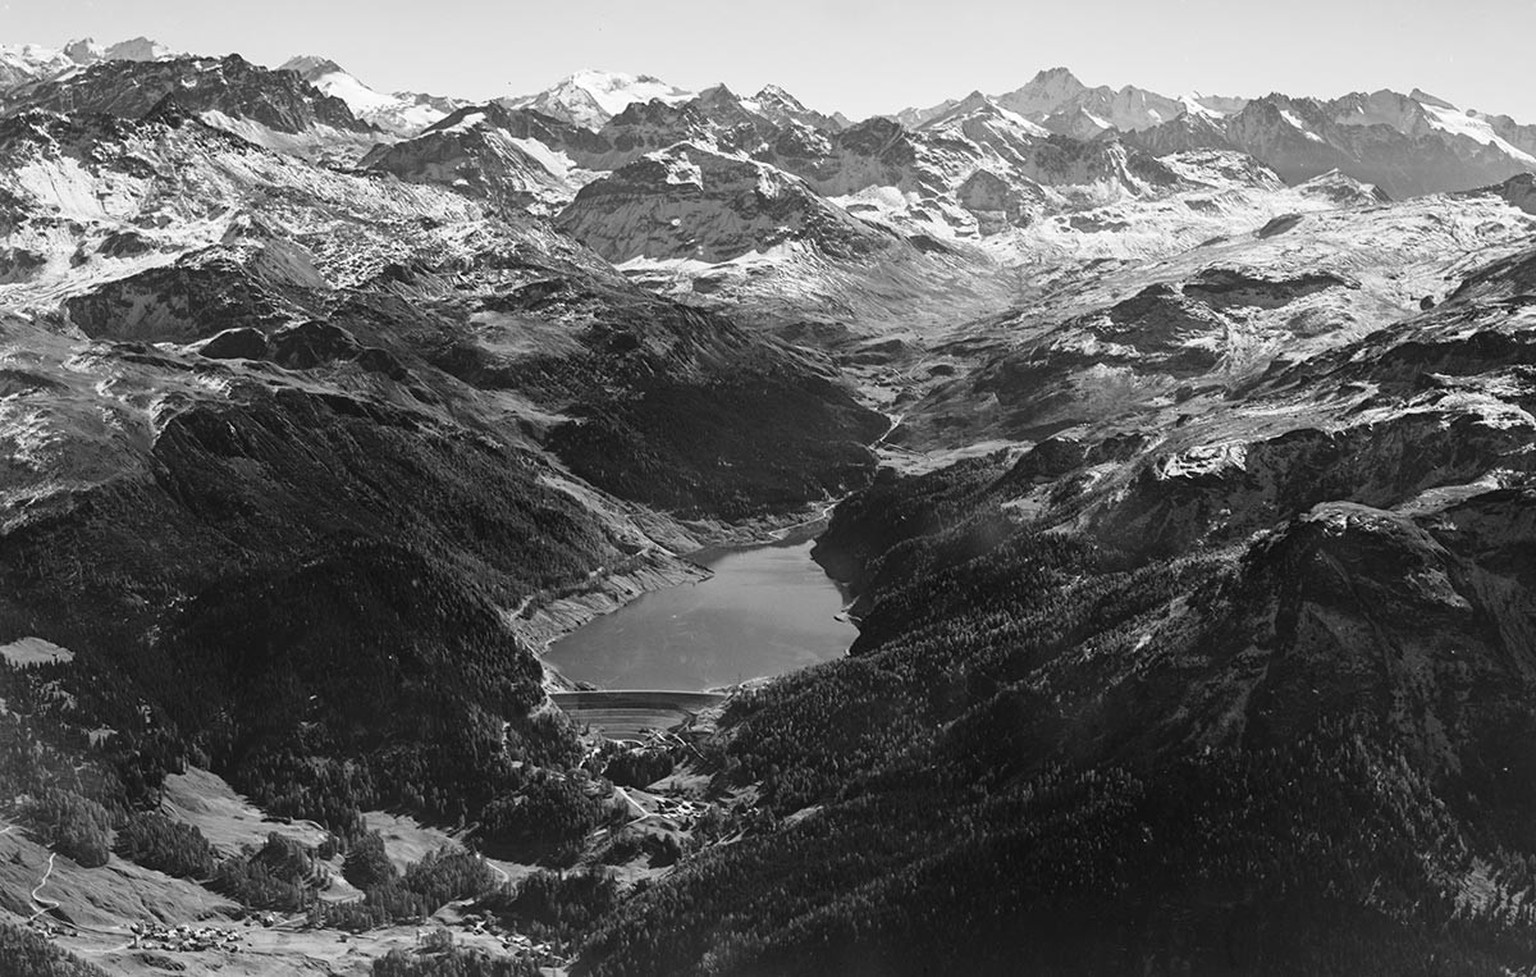 Blick auf den Marmorerastausee, 1954.
https://ba.e-pics.ethz.ch/catalog/ETHBIB.Bildarchiv/r/531400/viewmode=infoview